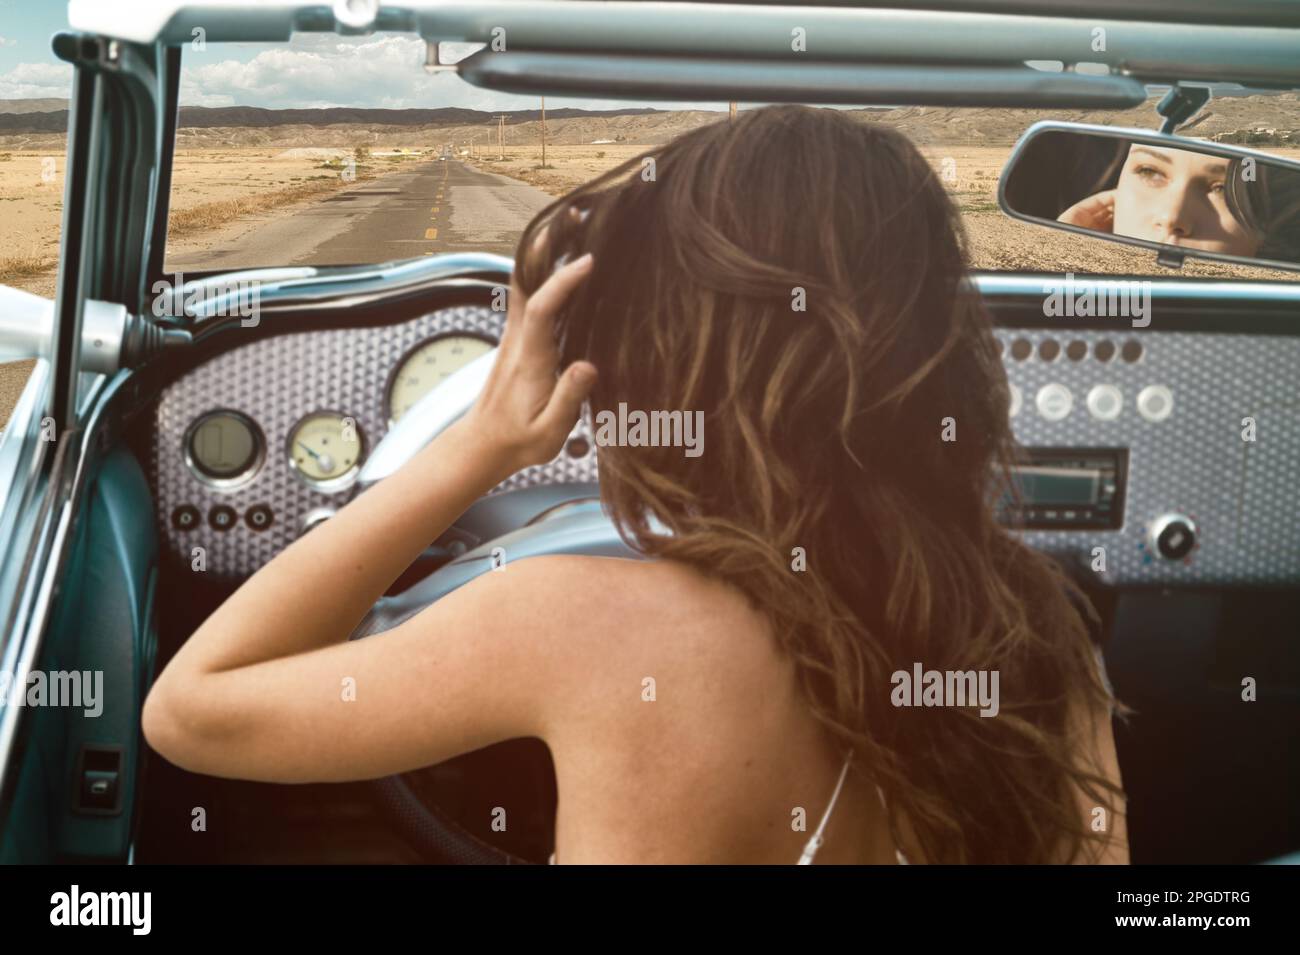 Vista trasera de una mujer joven en un viaje por carretera en un coche convertible vintage, San Bernardino, California, EE.UU Foto de stock